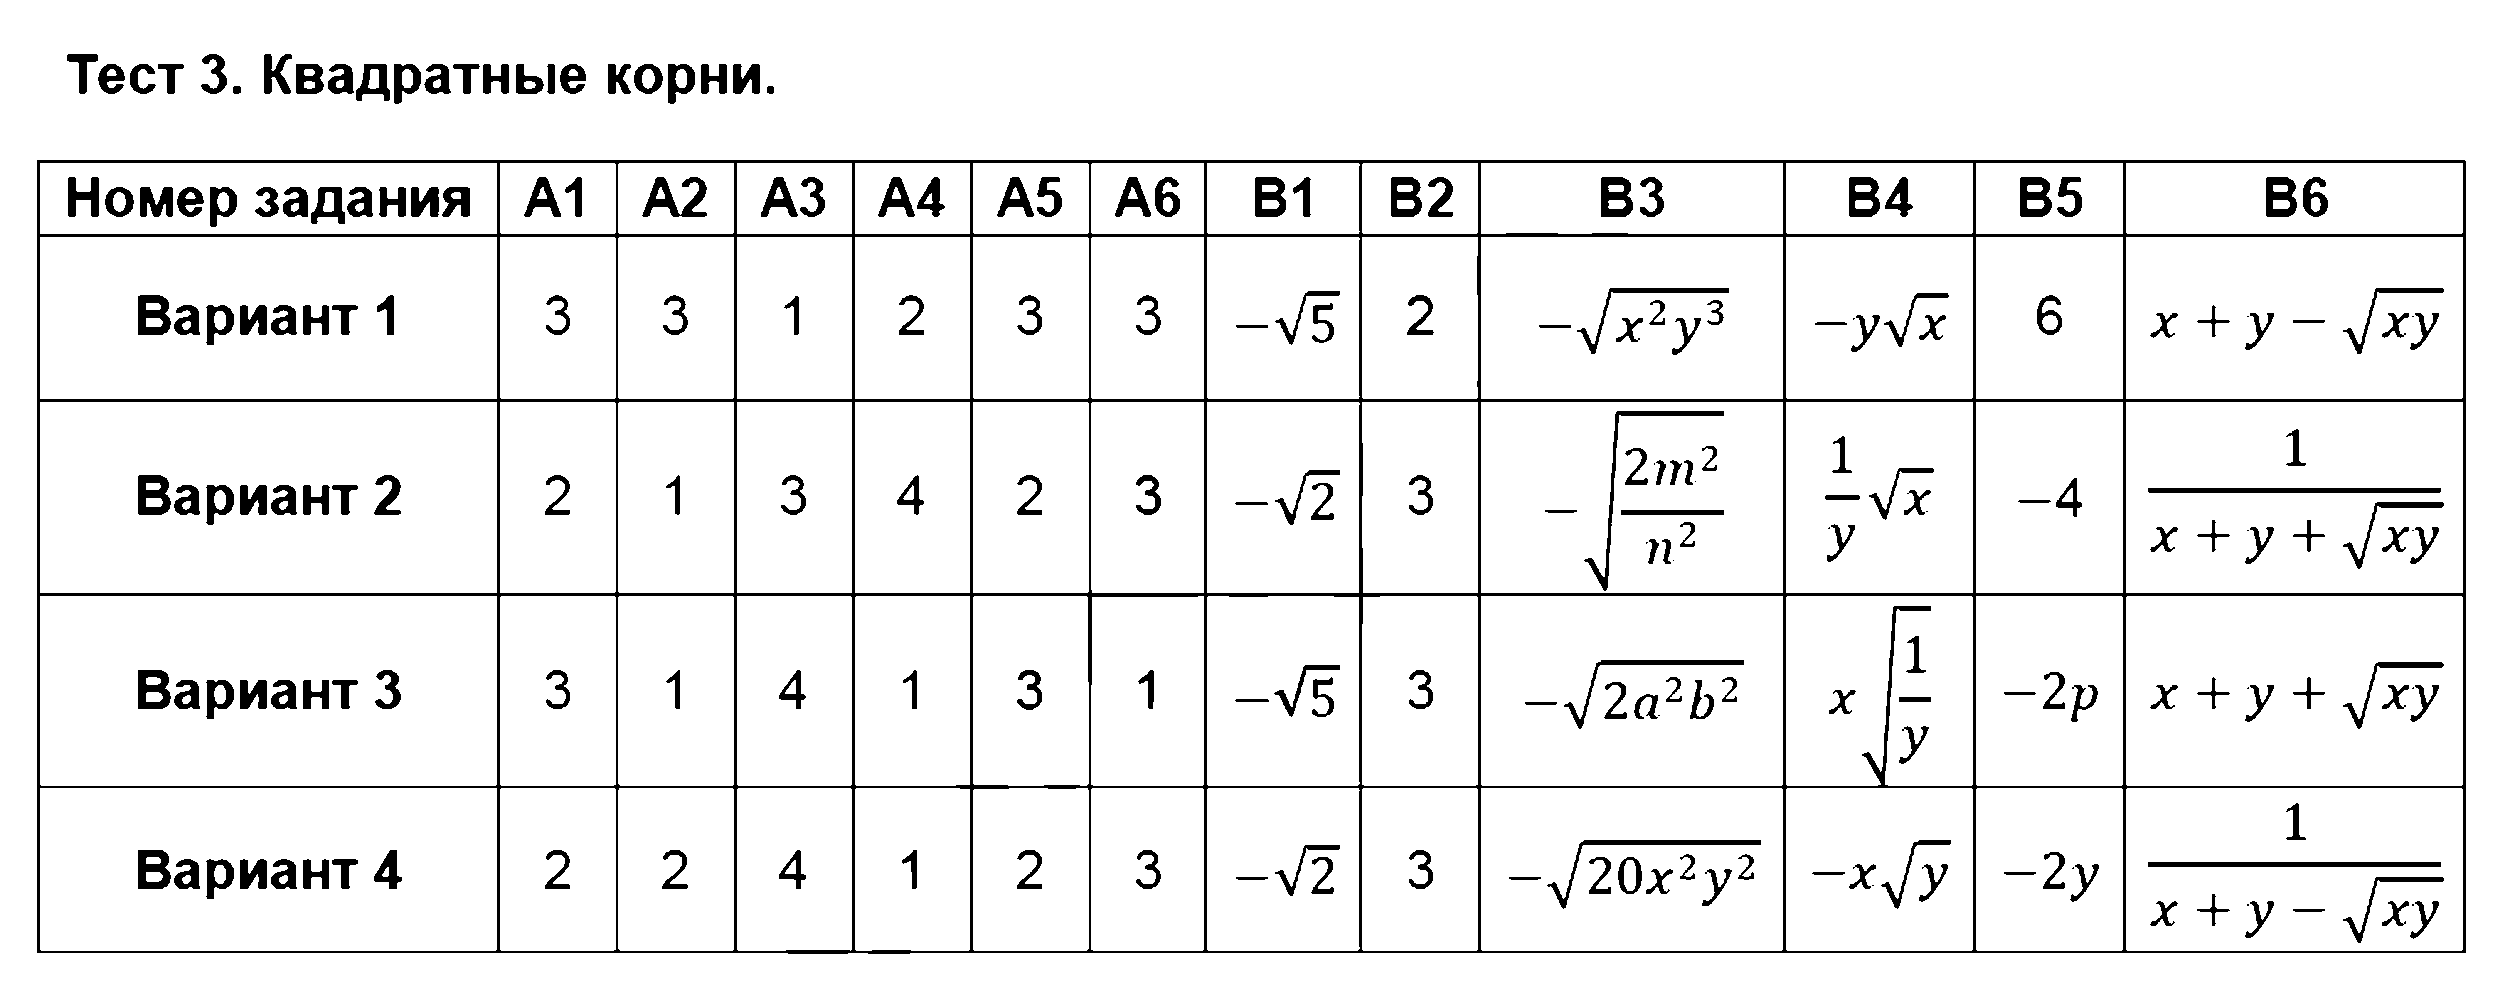 ГДЗ Алгебра 8 класс - Тест 3. Квадратные корни